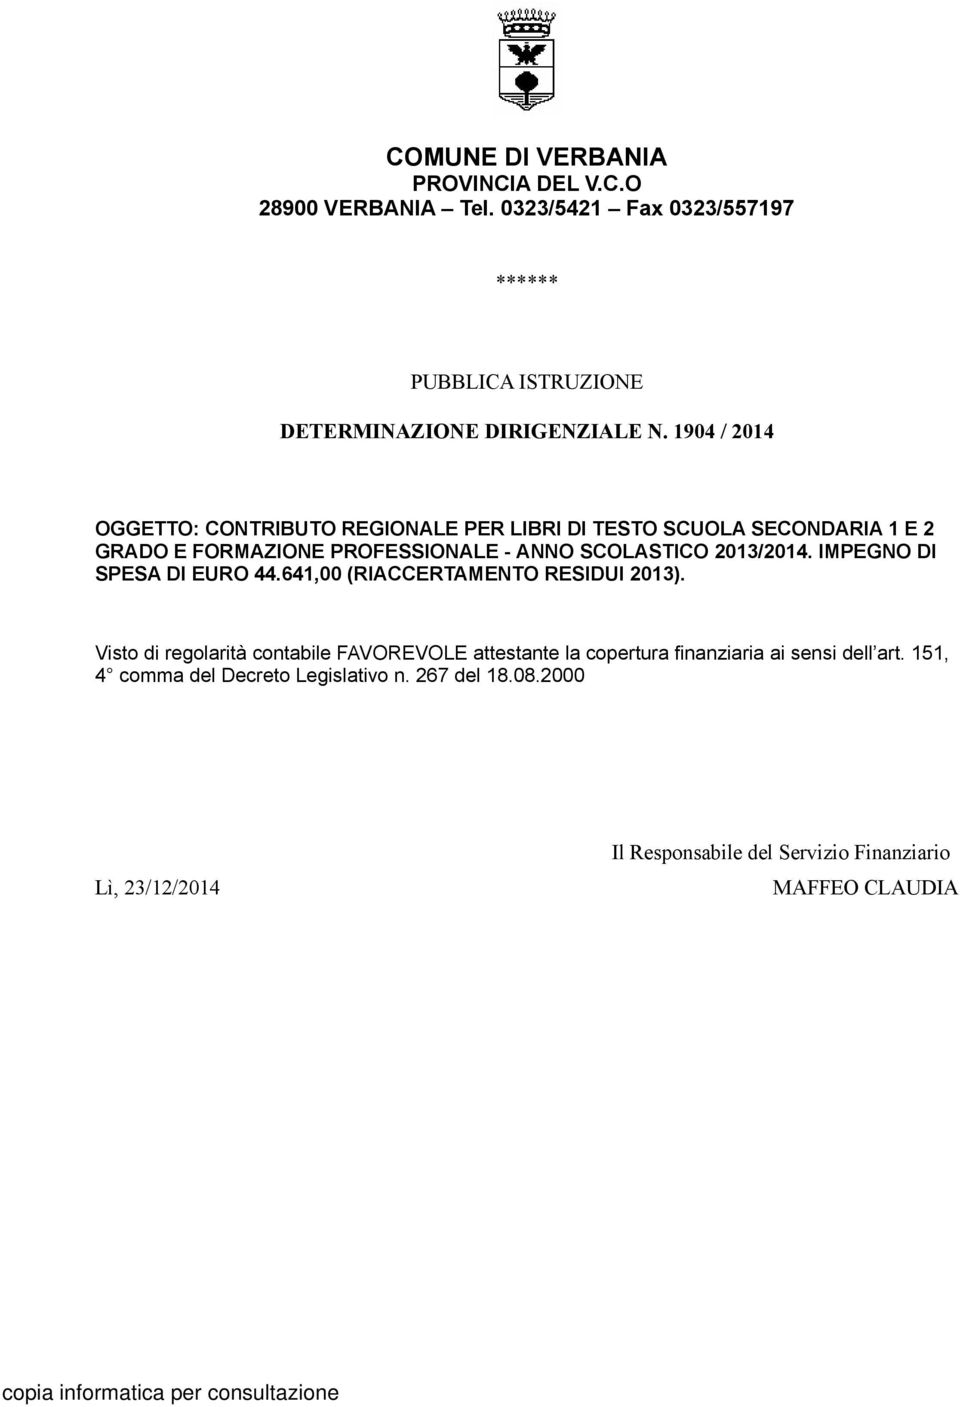 IMPEGNO DI SPESA DI EURO 44.641,00 (RIACCERTAMENTO RESIDUI 2013).